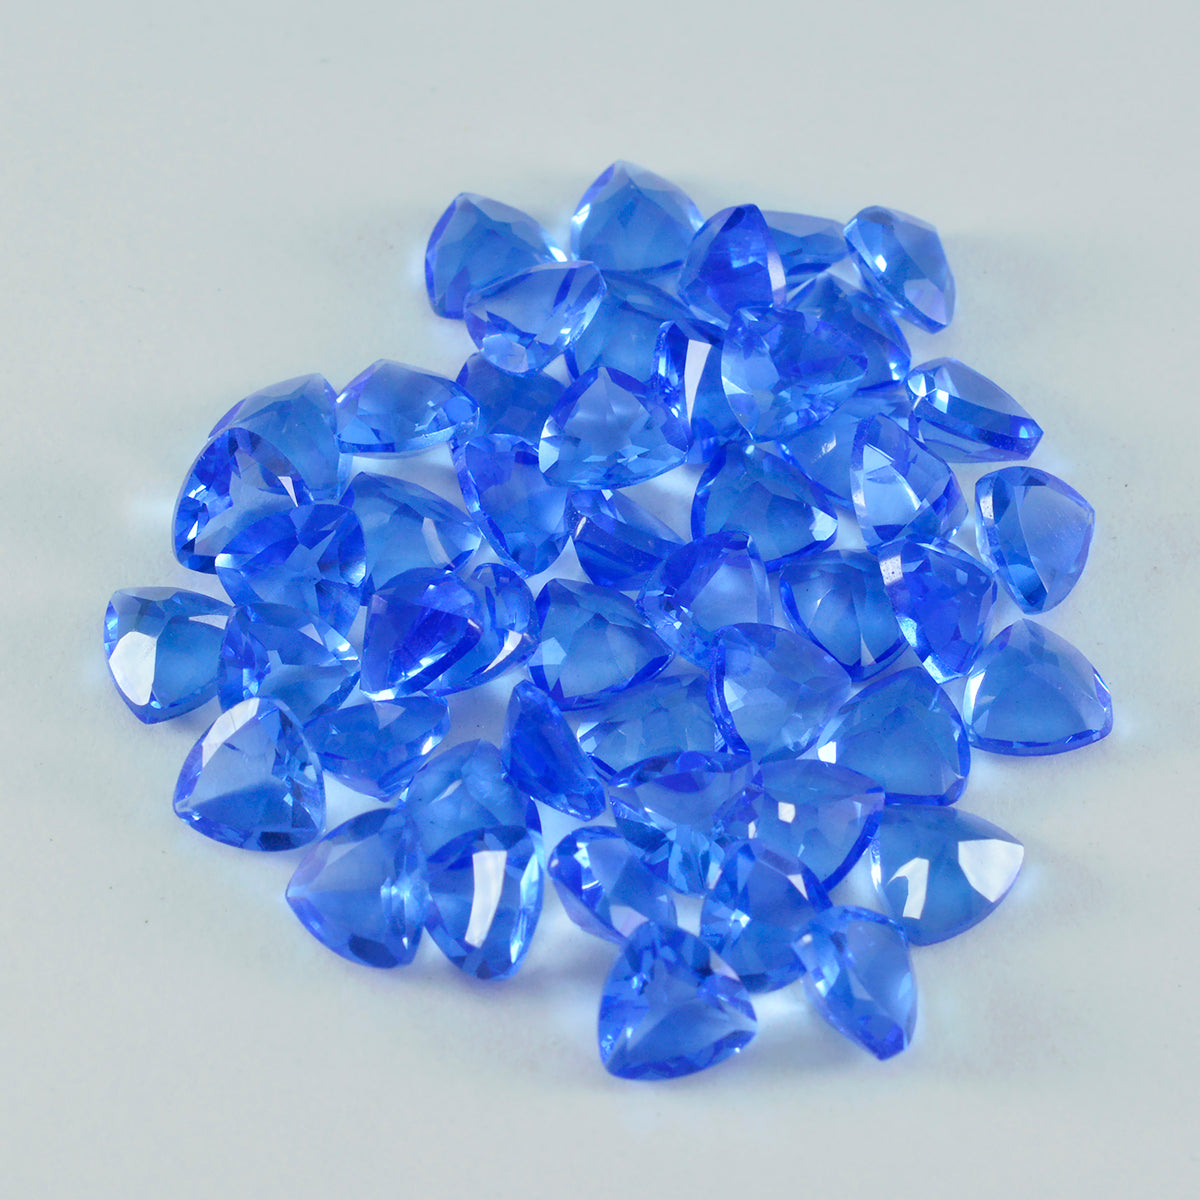 riyogems 1 шт. синий сапфир cz ограненный 7x7 мм форма триллиона потрясающего качества свободный камень